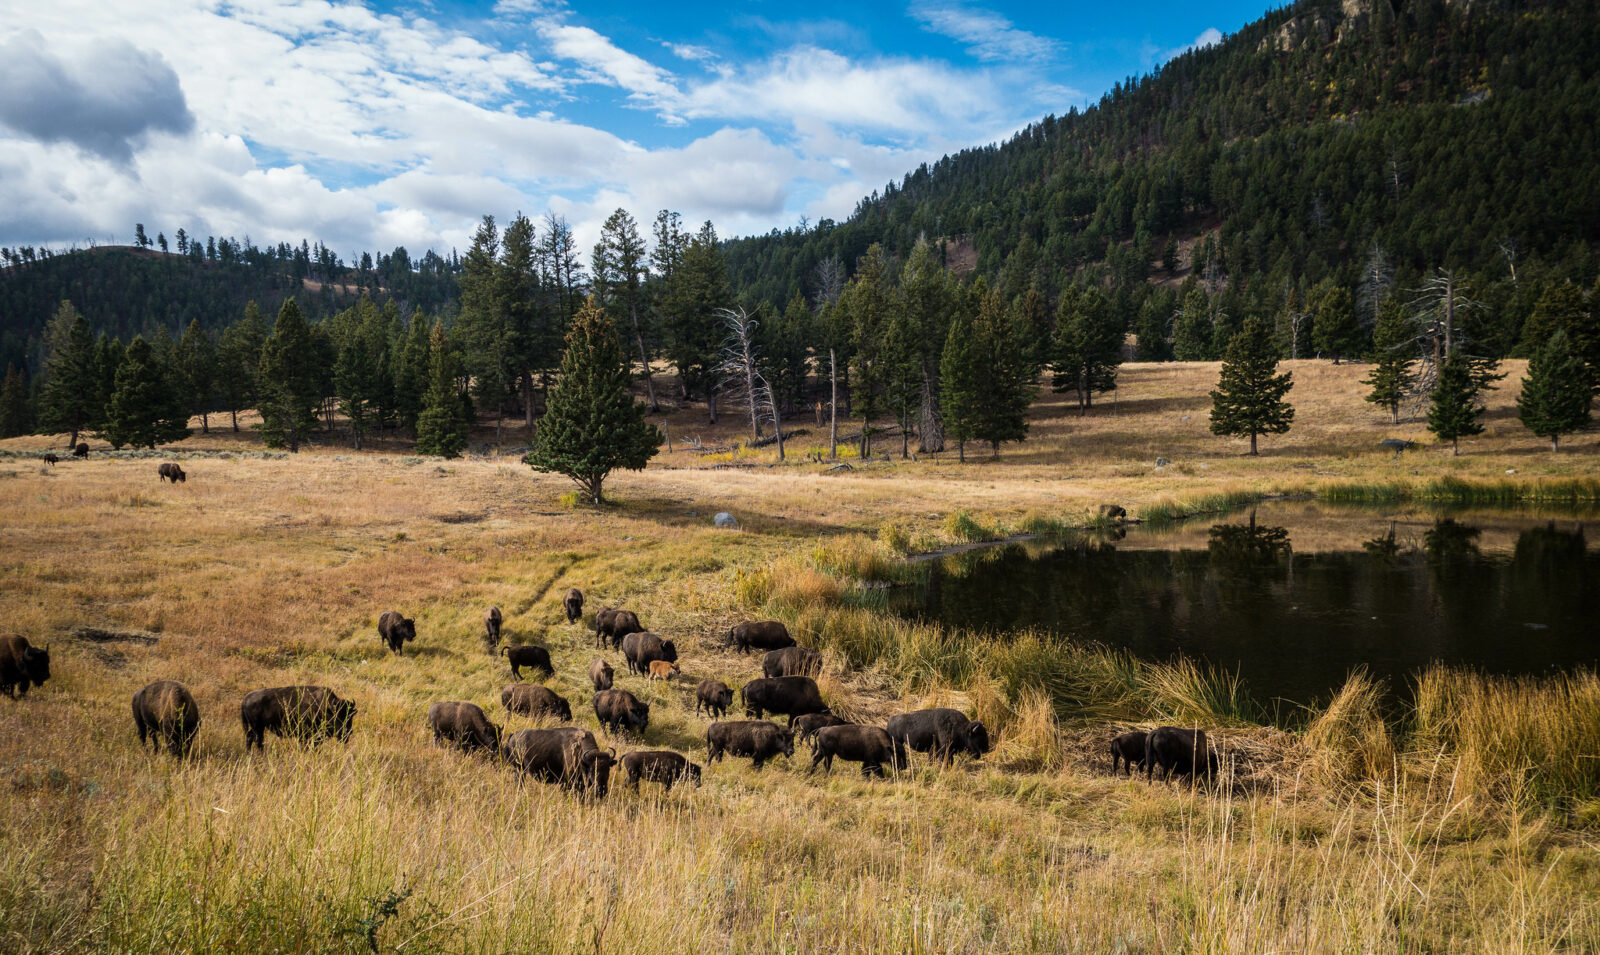 A herd of buffalo roam a grassland field.